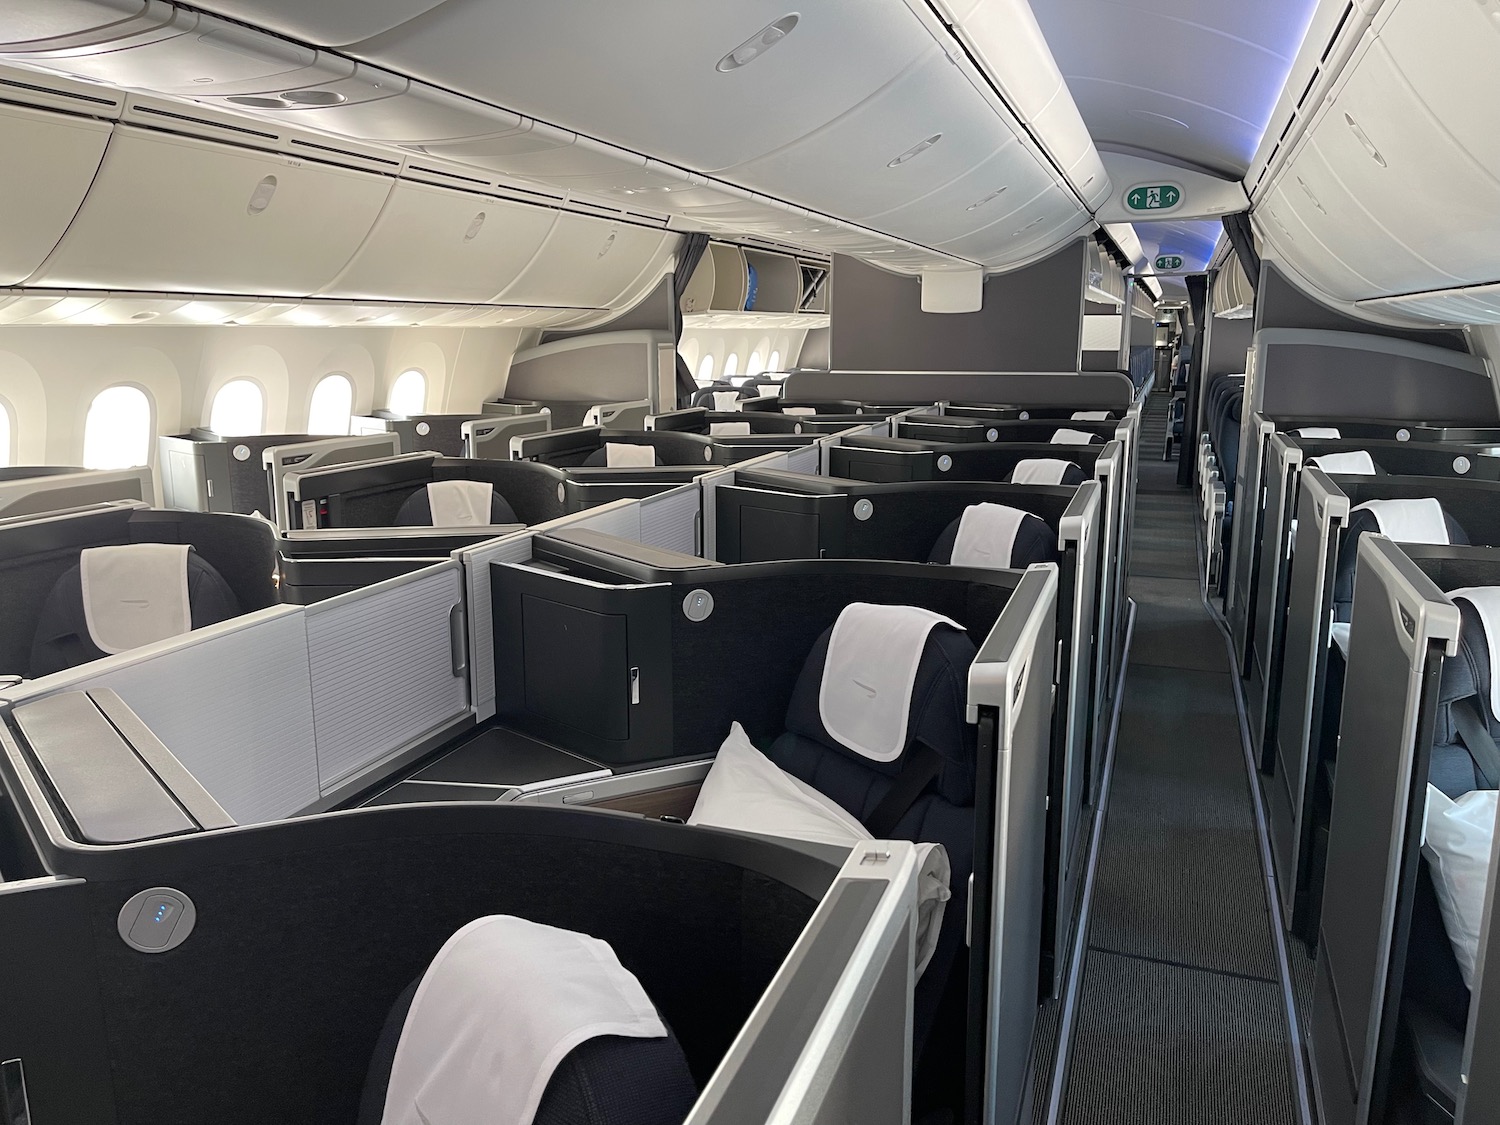 British Airways 787 10 Club World Suites 2 - Travel News, Insights & Resources.